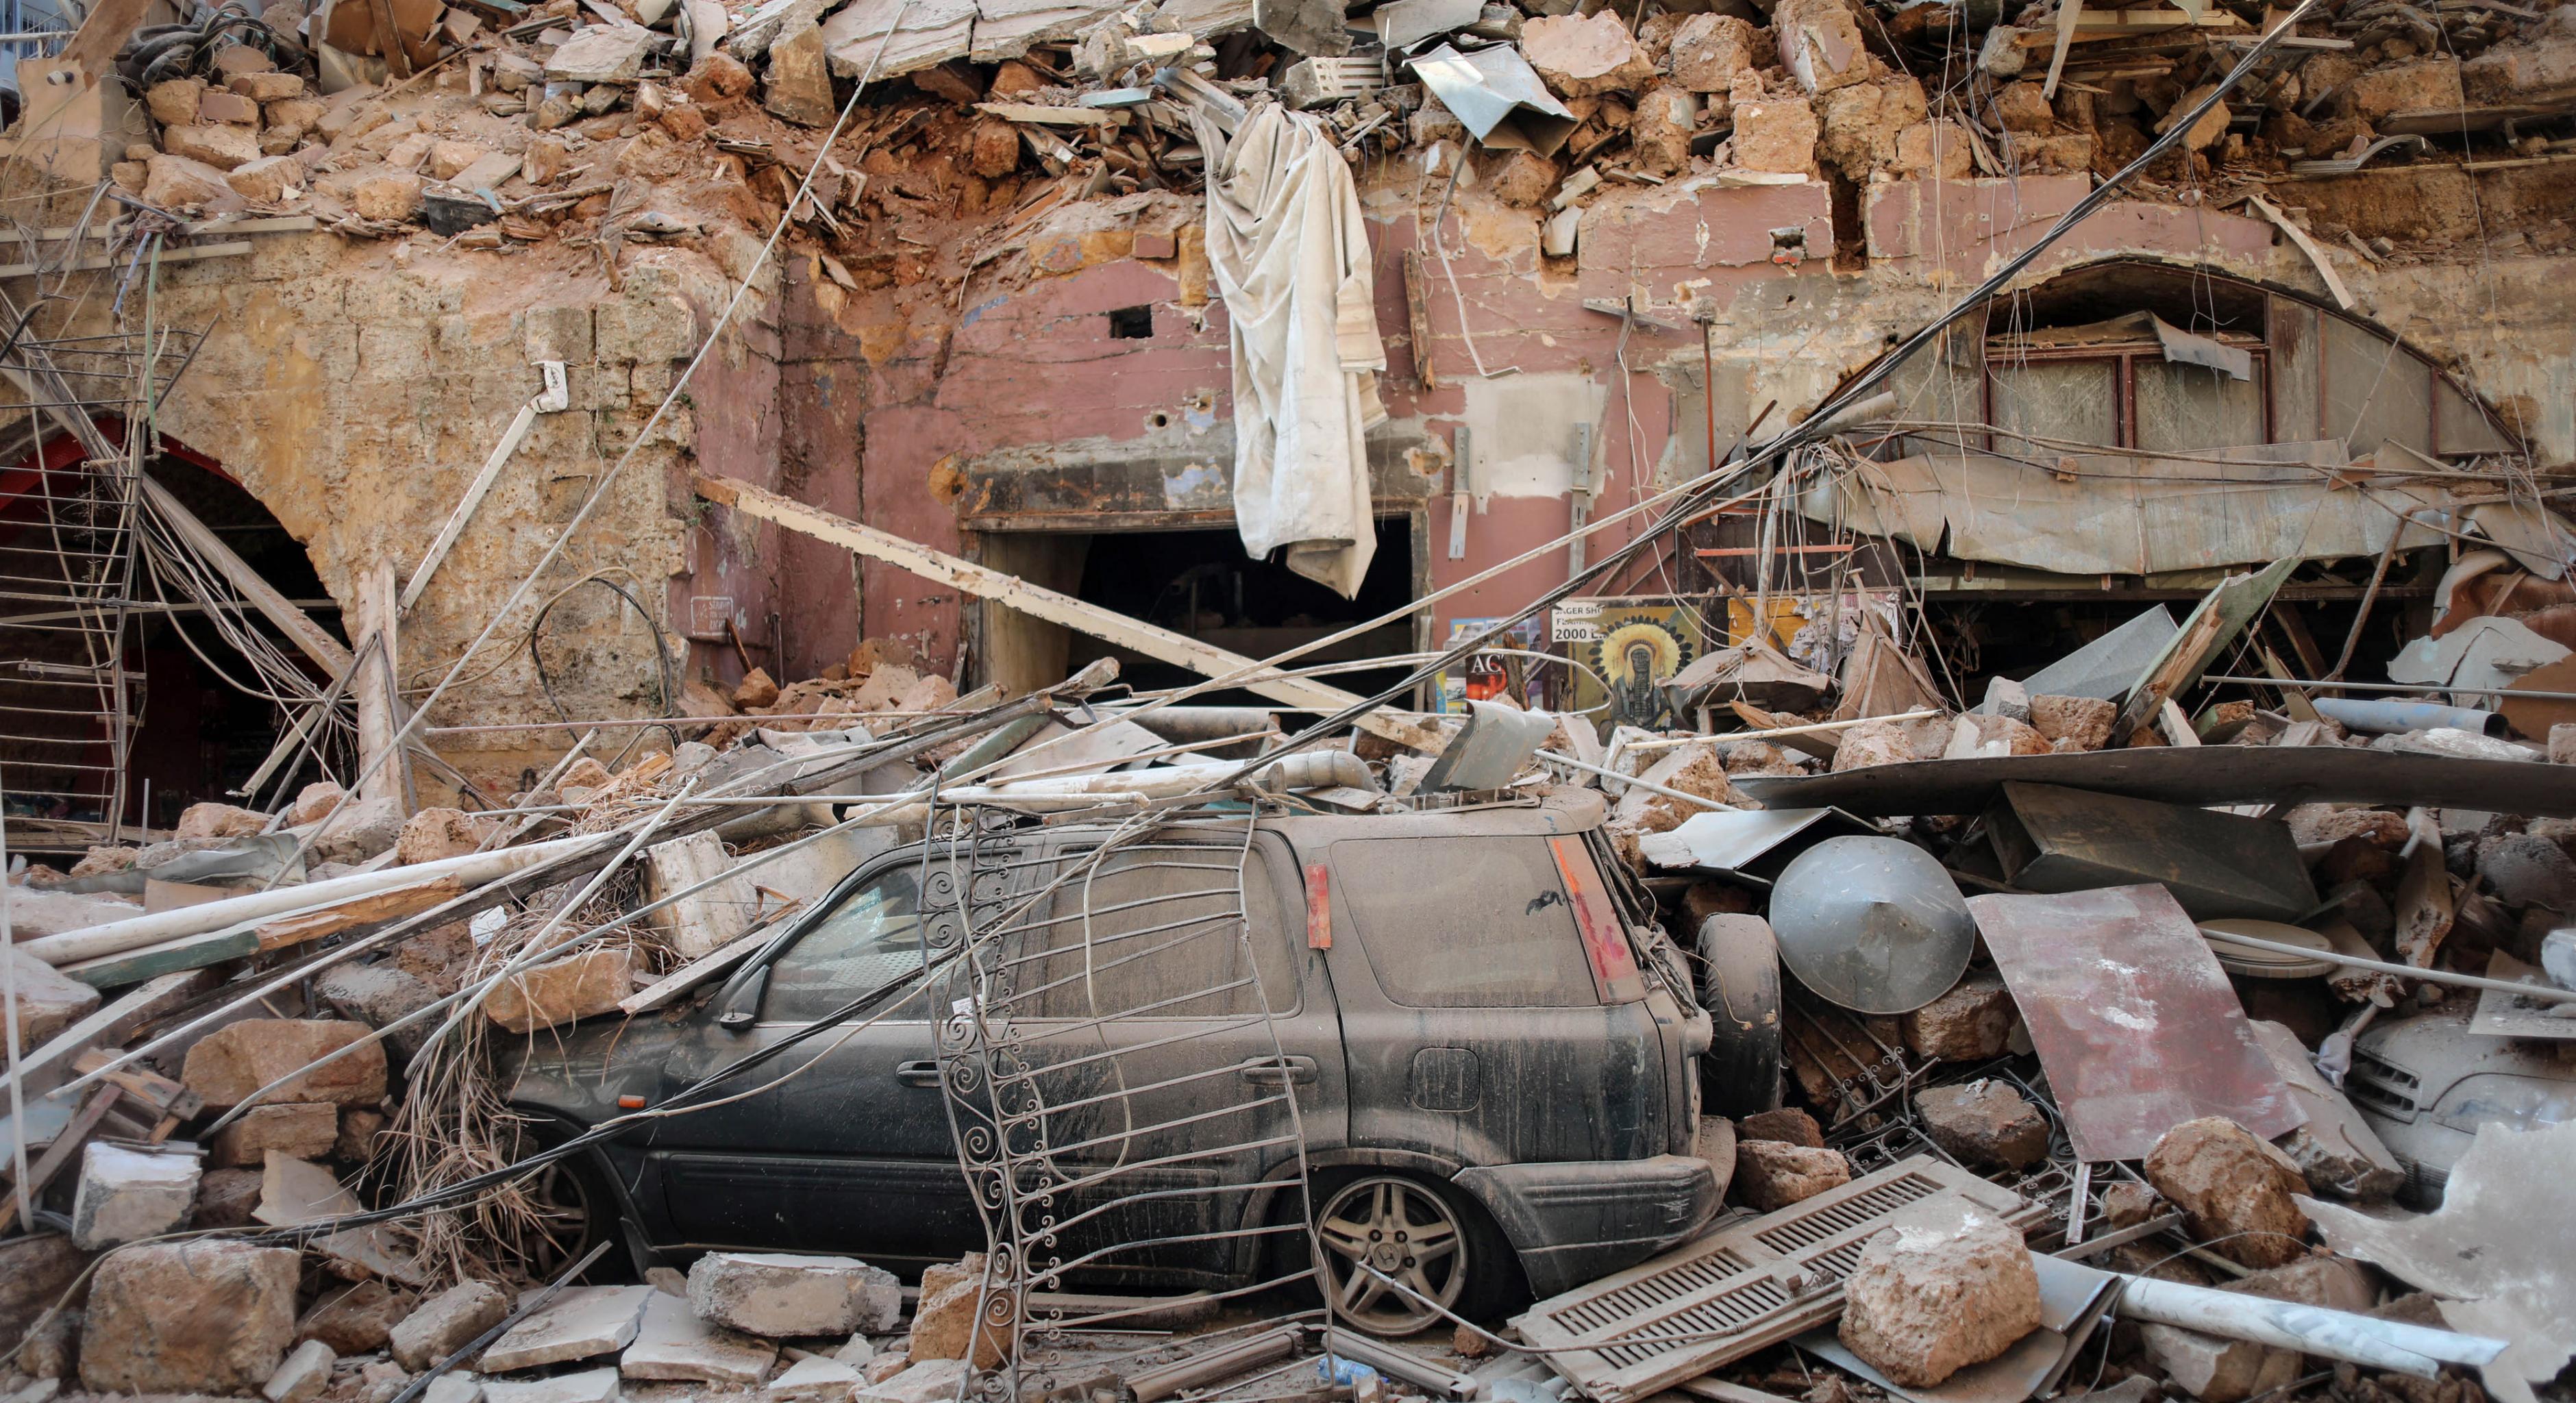 Trümmer und Schutt liegen auf einem beschädigten Auto in einem Wohngebiet in Beirut, Libanon, am Mittwoch, 5. August 2020